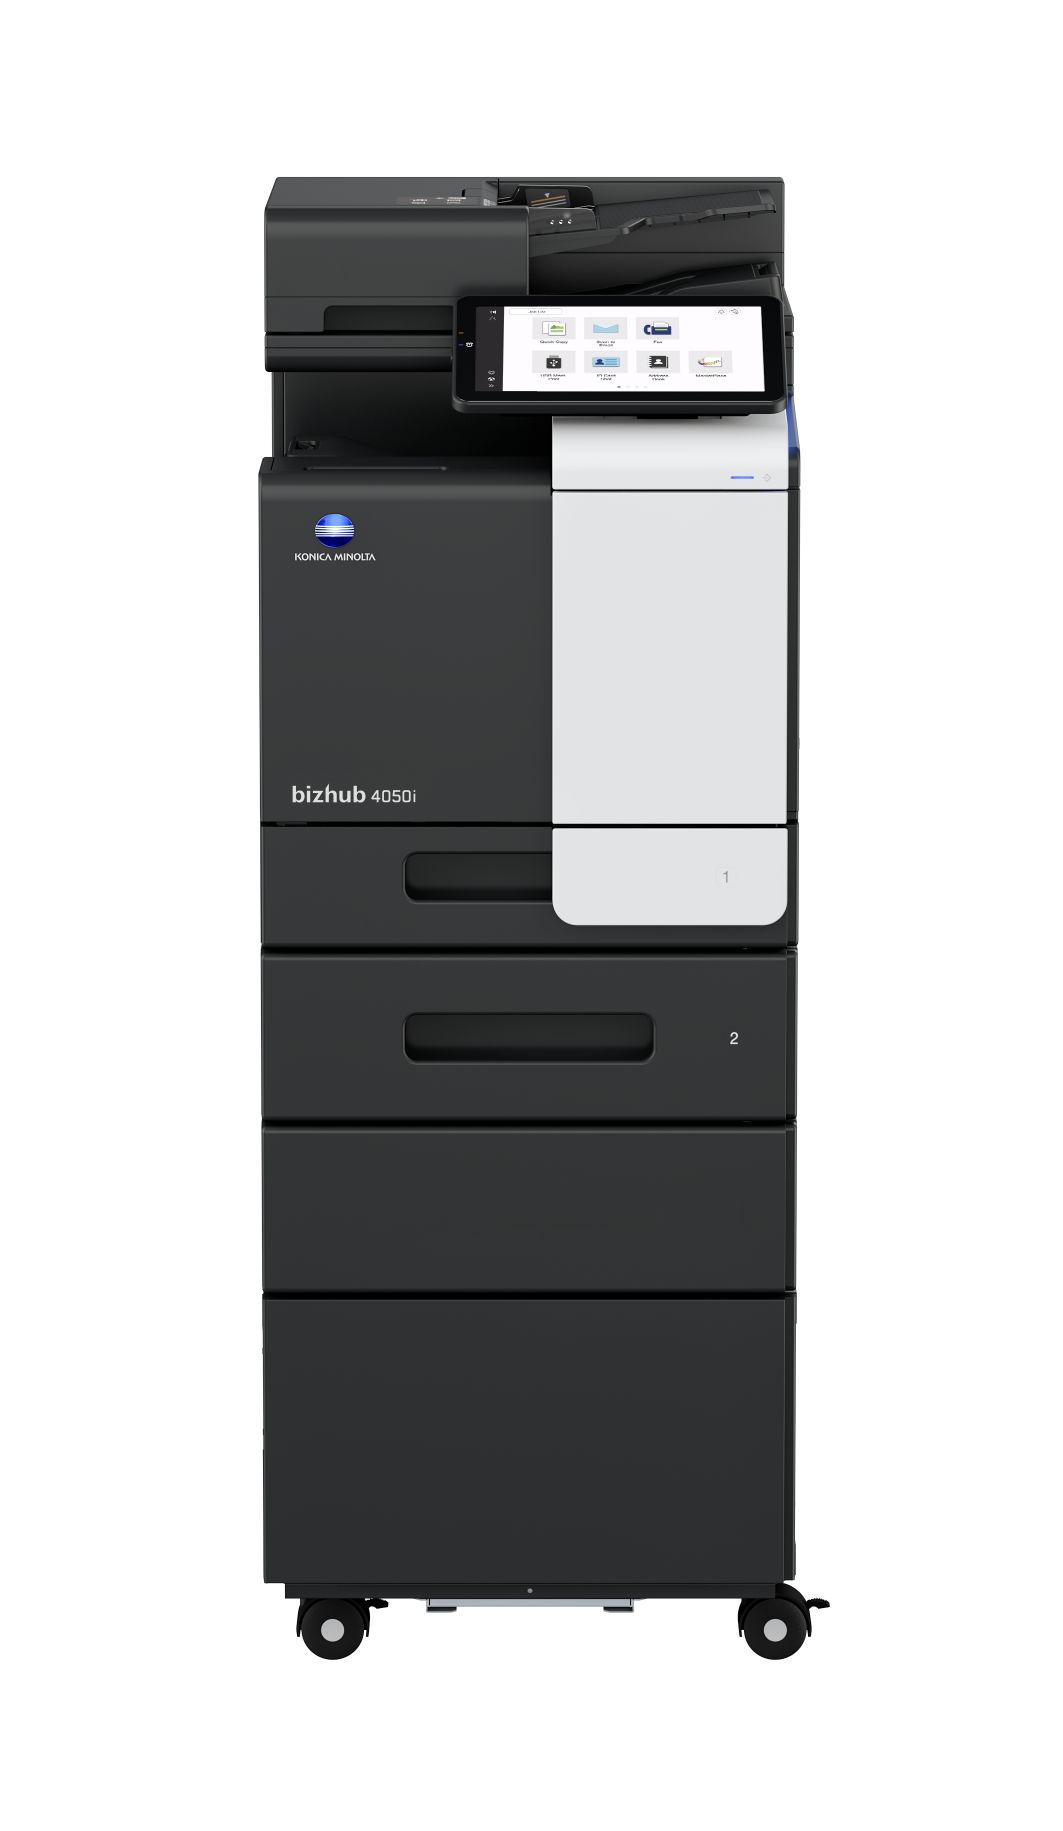 bizhub 4050i floormodel fax